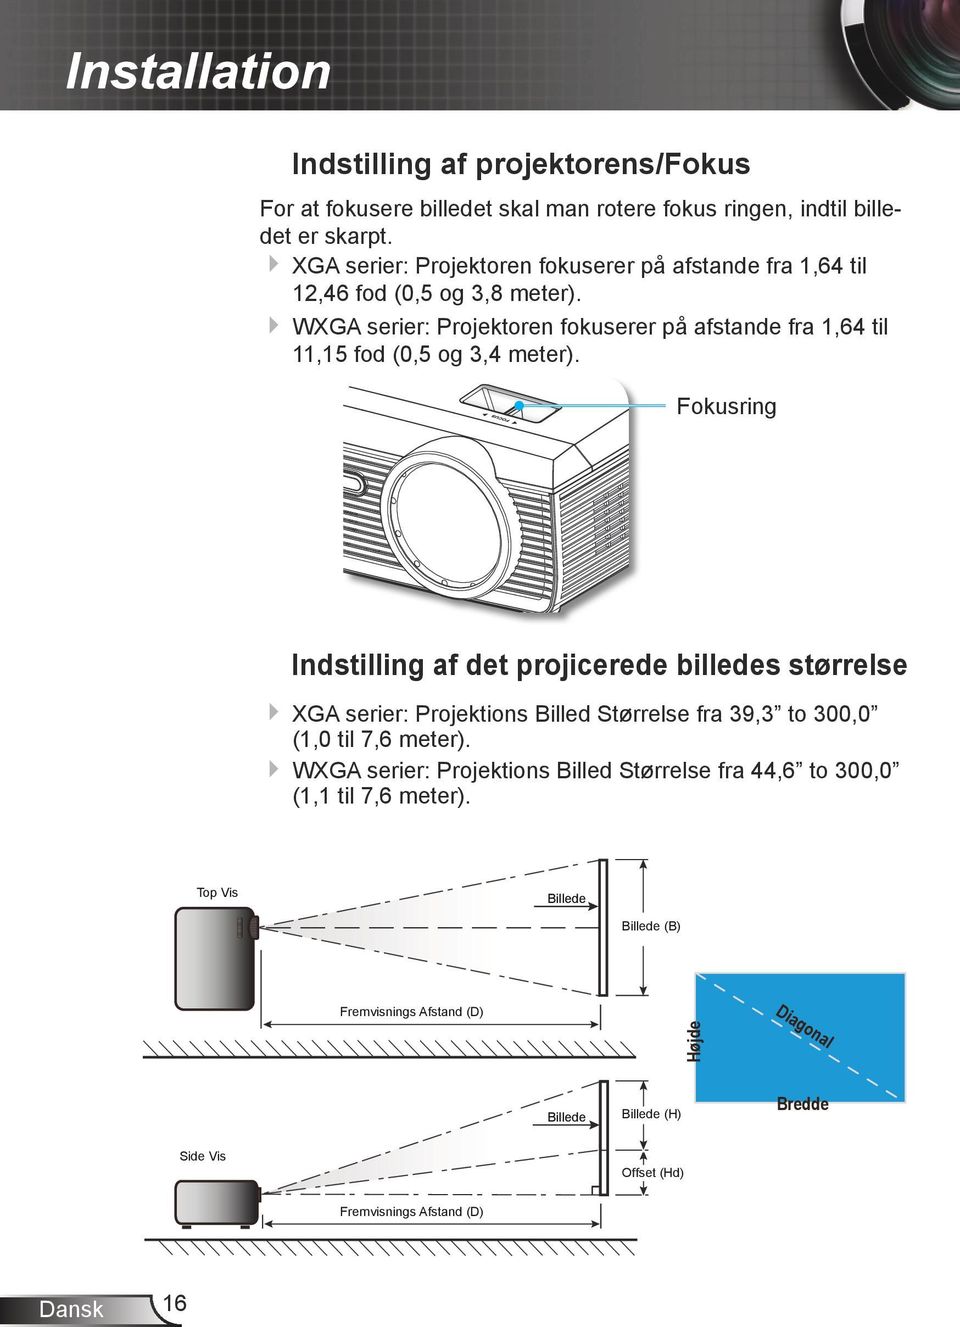 WXGA serier: Projektoren fokuserer på afstande fra 1,64 til 11,15 fod (0,5 og 3,4 meter).